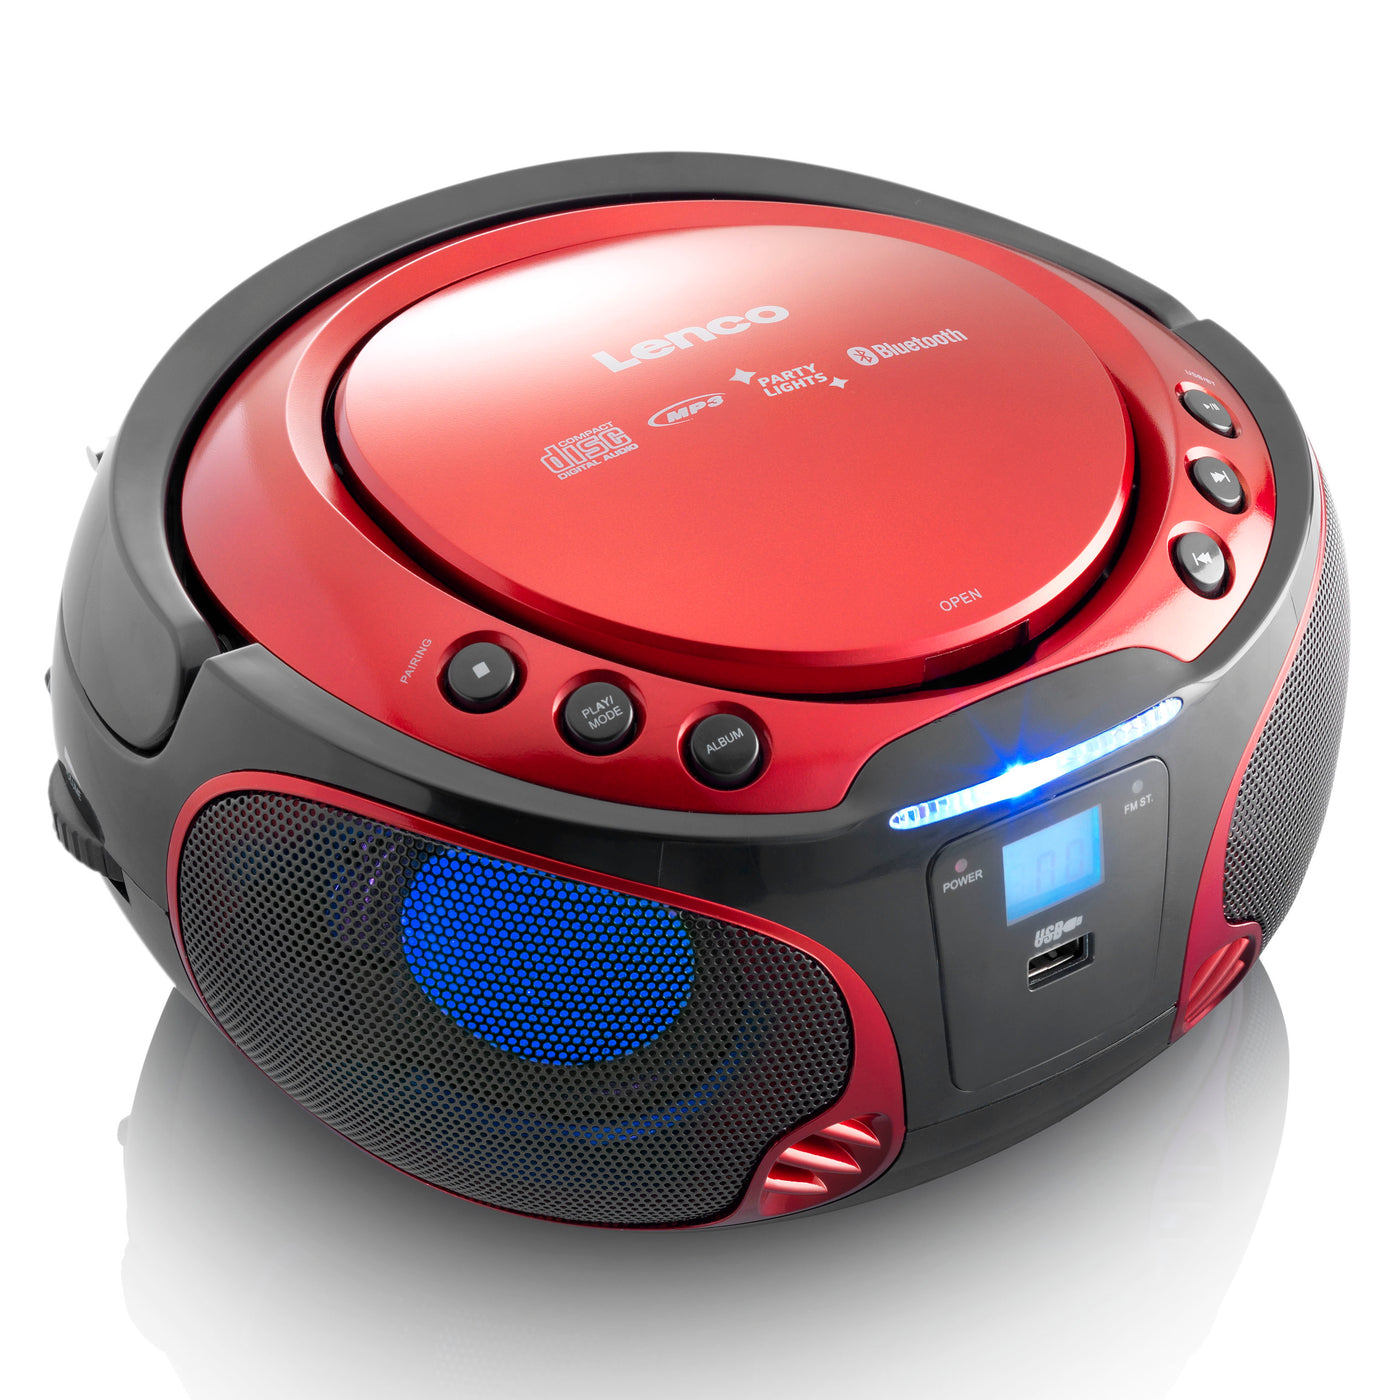 Lenco SCD-550RD - Radio FM et lecteur CD/MP3/USB/Bluetooth® portable avec éclairage LED - Rouge